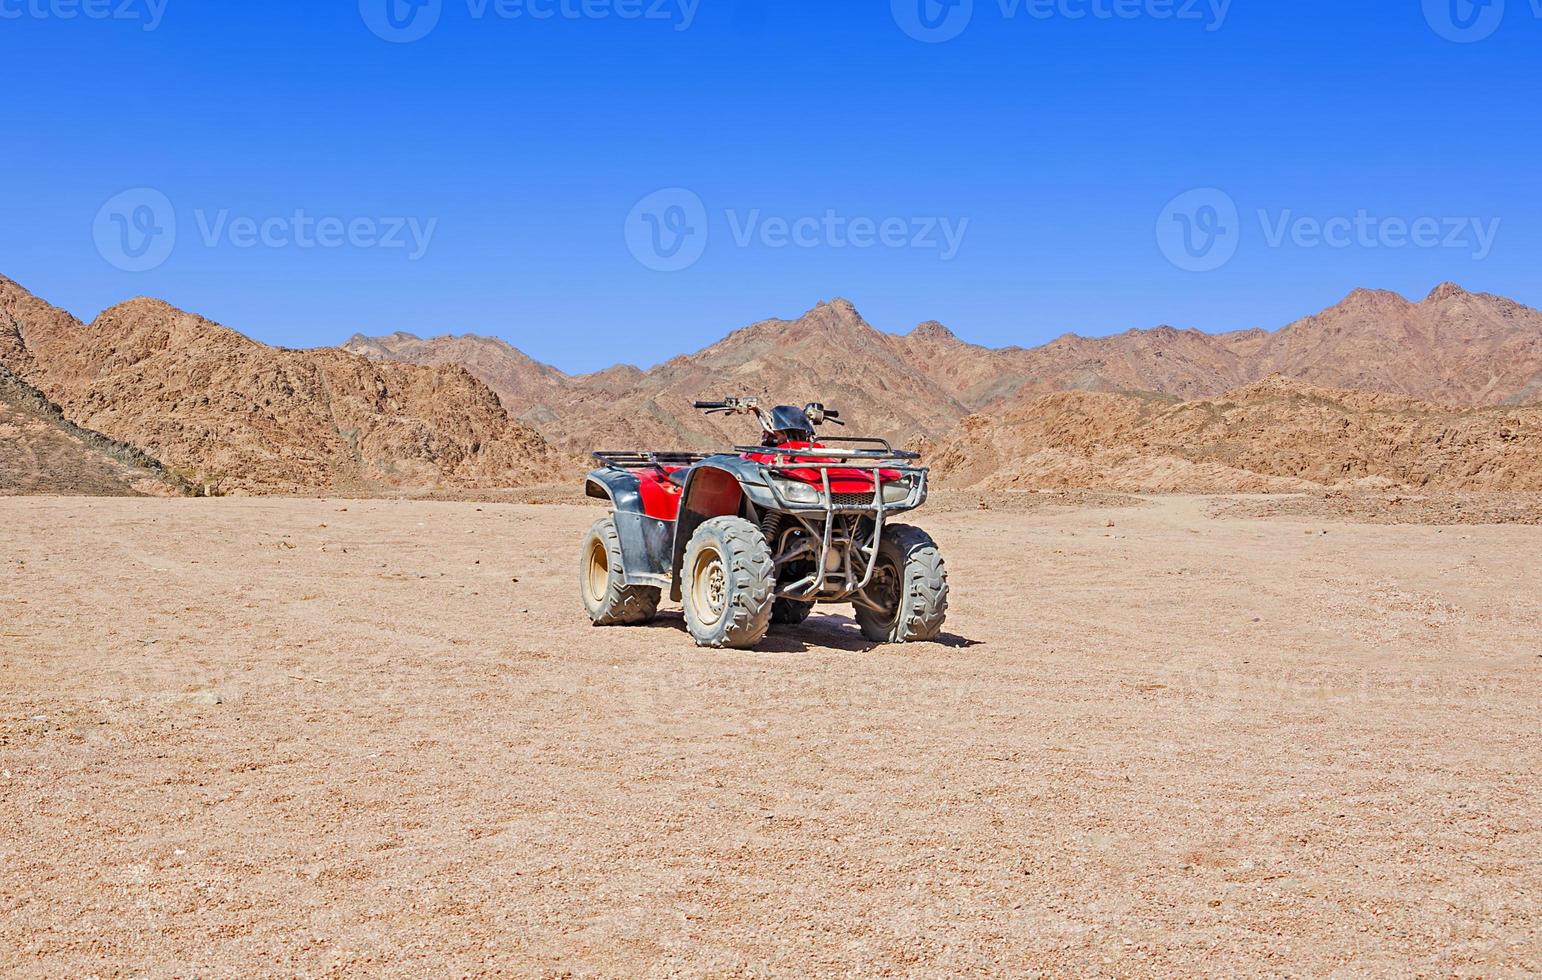 rode quad in de woestijn foto